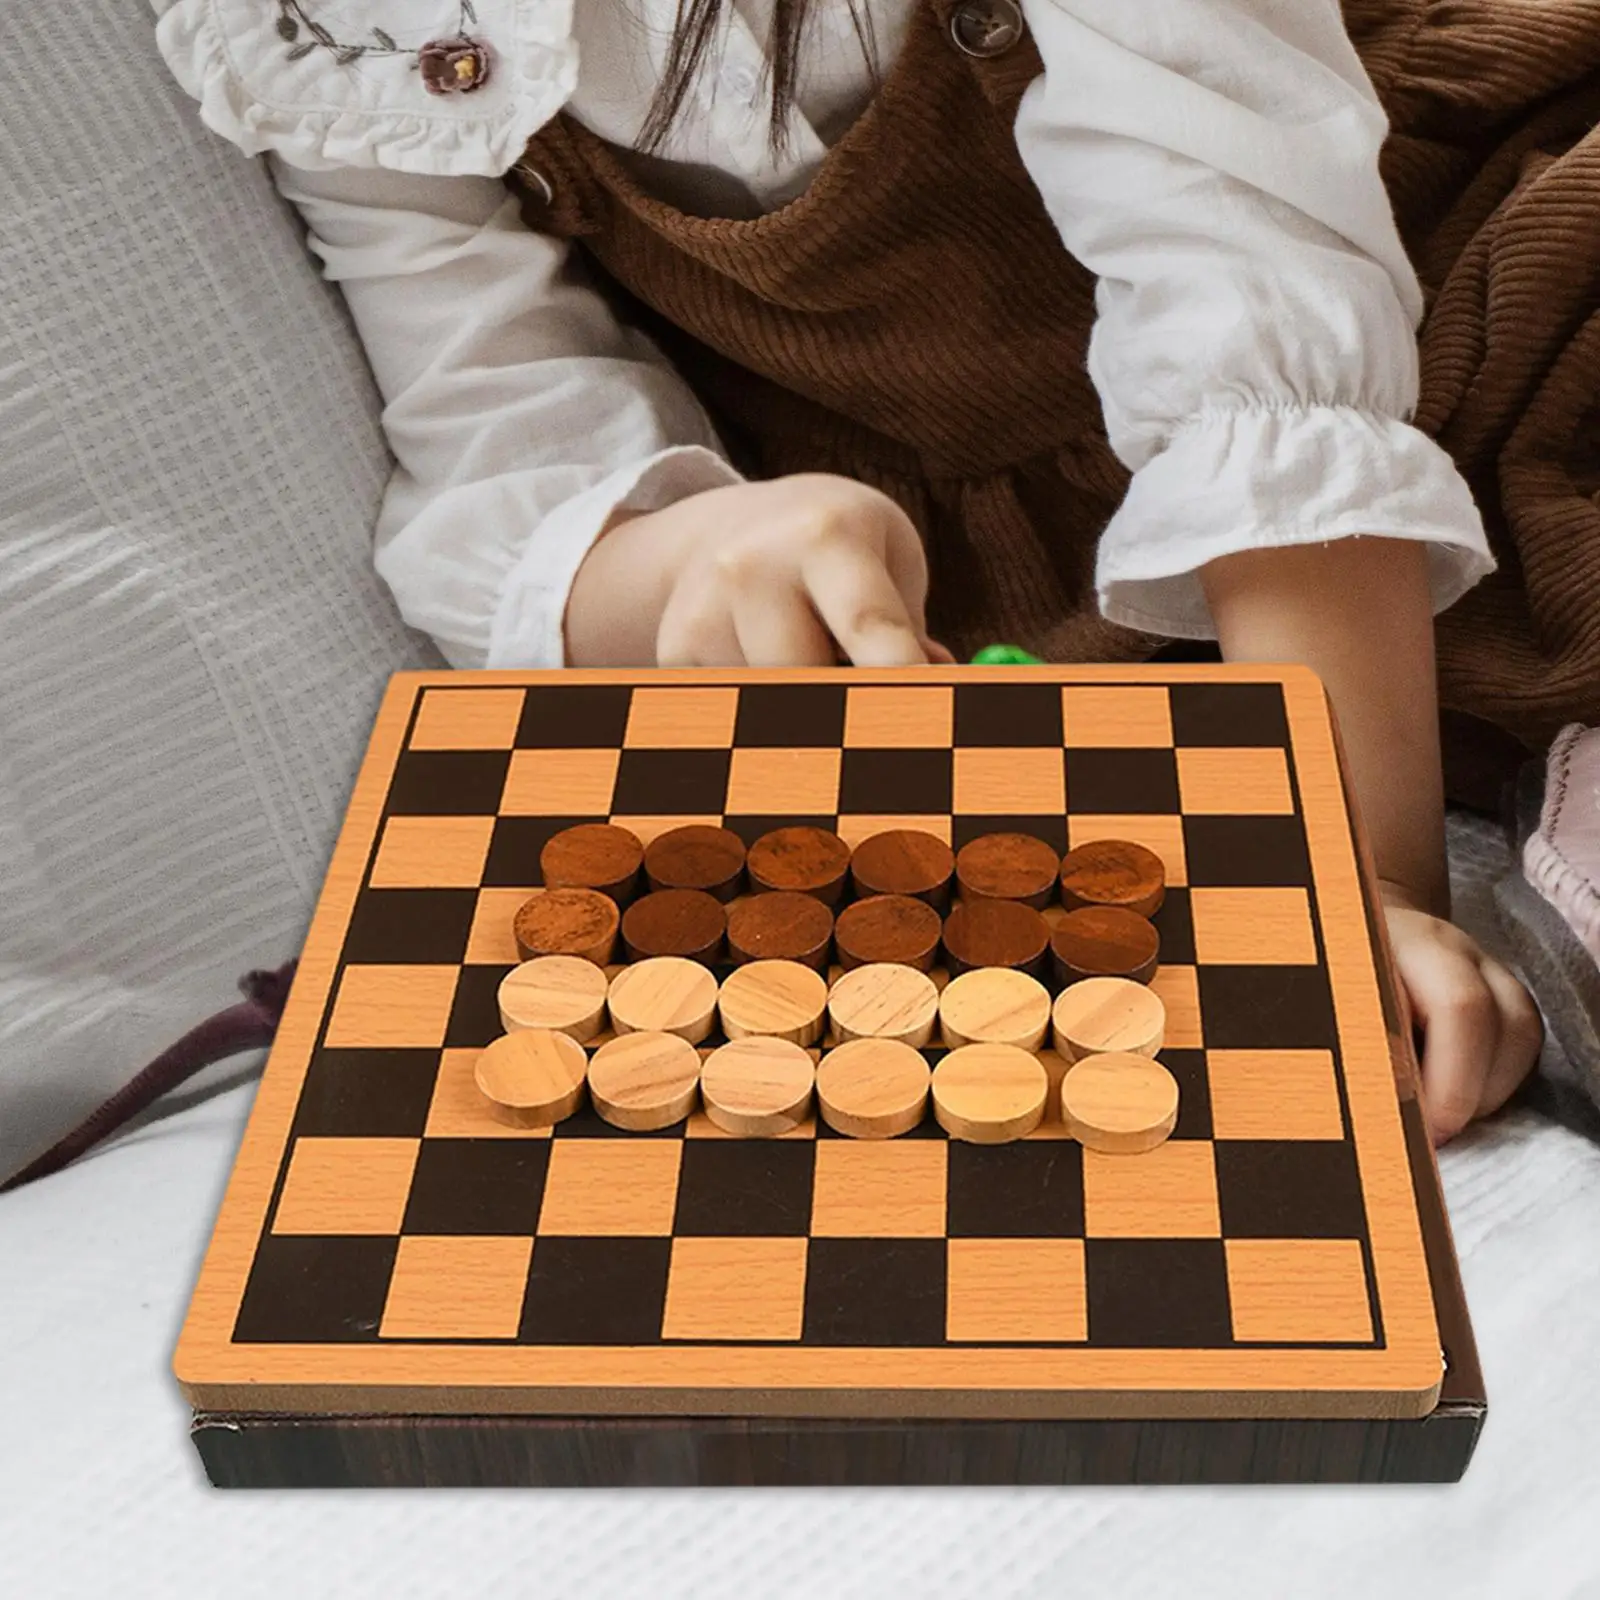 International Chess Game Set Chess Board for Boys Girls Children Kids Home